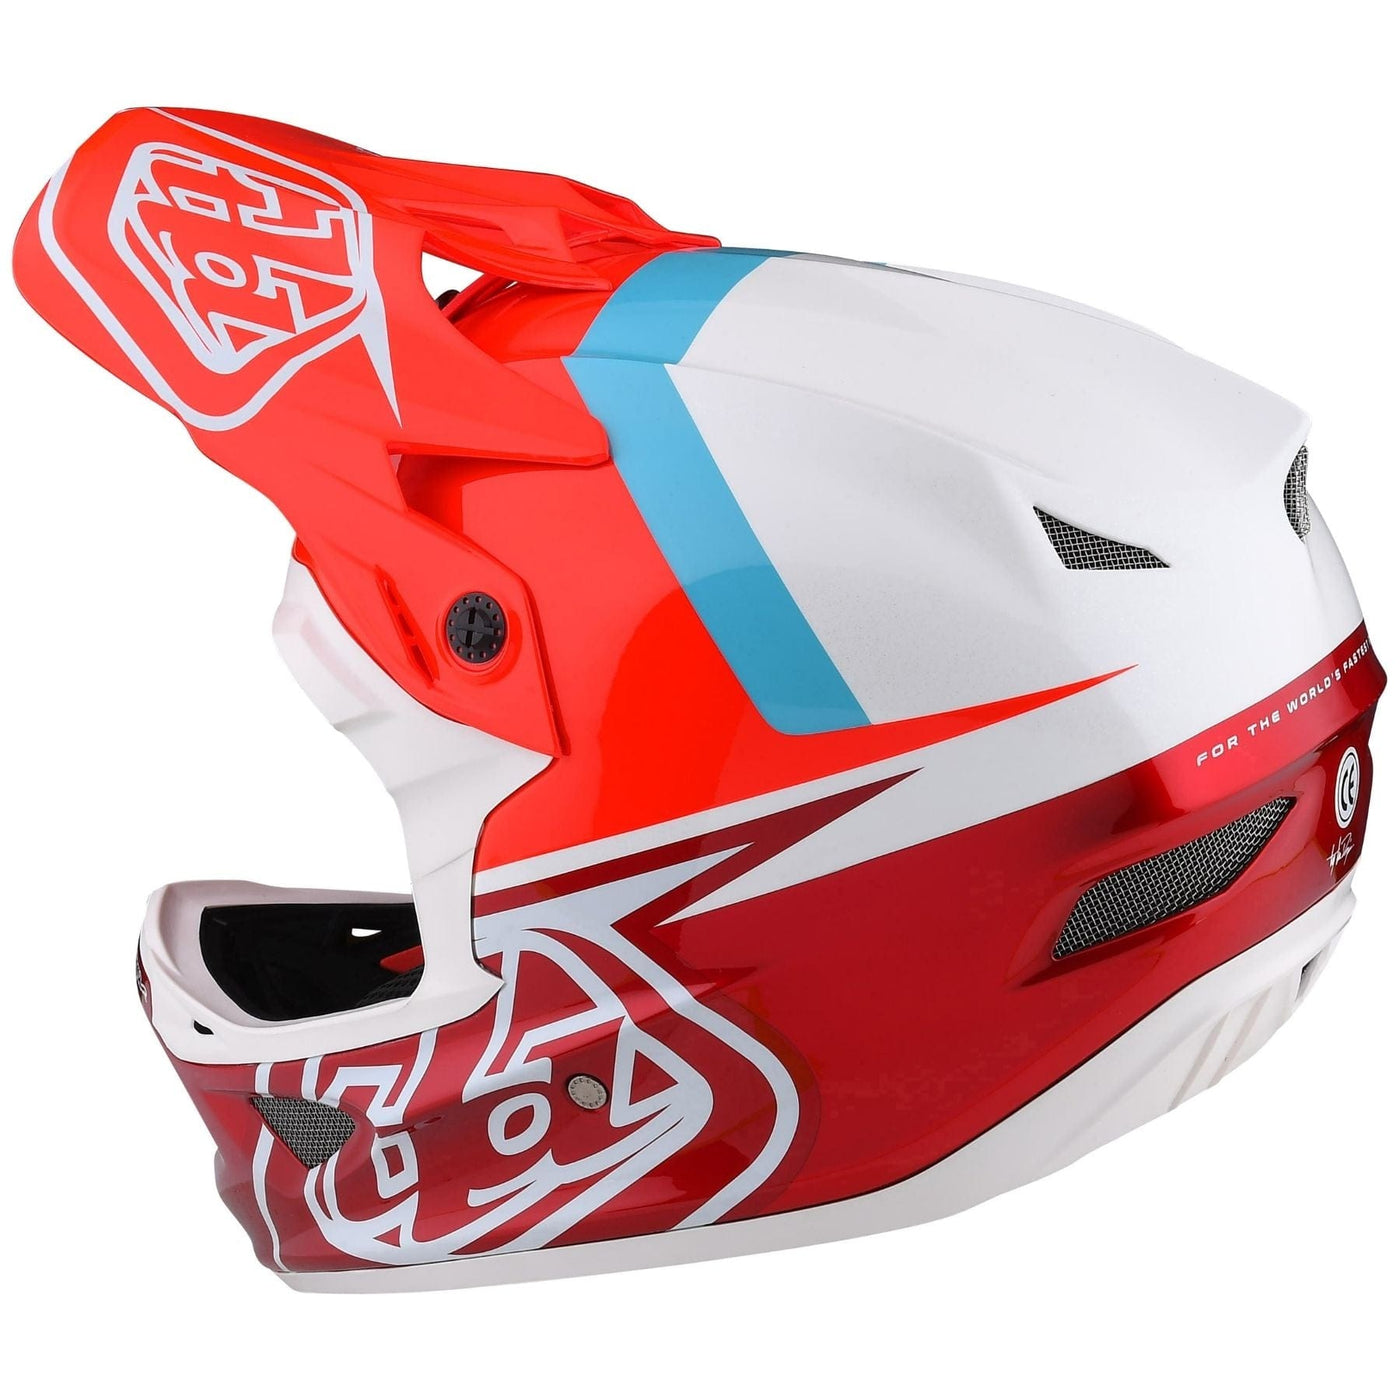 Red Full-face BMX race helmets.